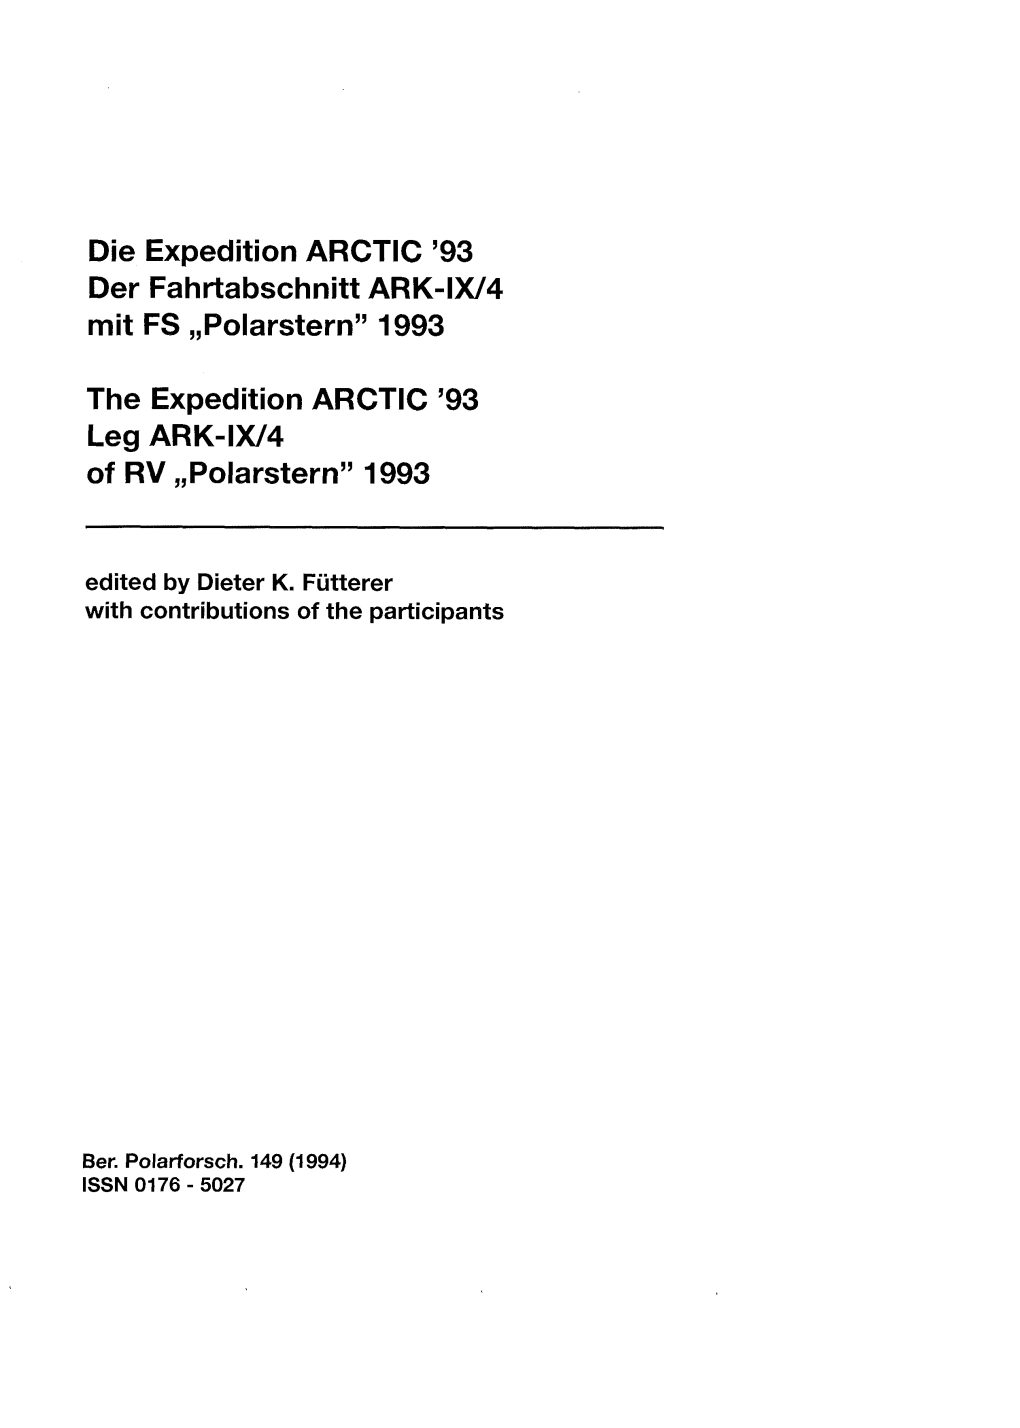 Die Expedition ARCTIC '93 Der Fahrtabschnitt ARK-IW4 Mit FS ,,Polarsternv1993